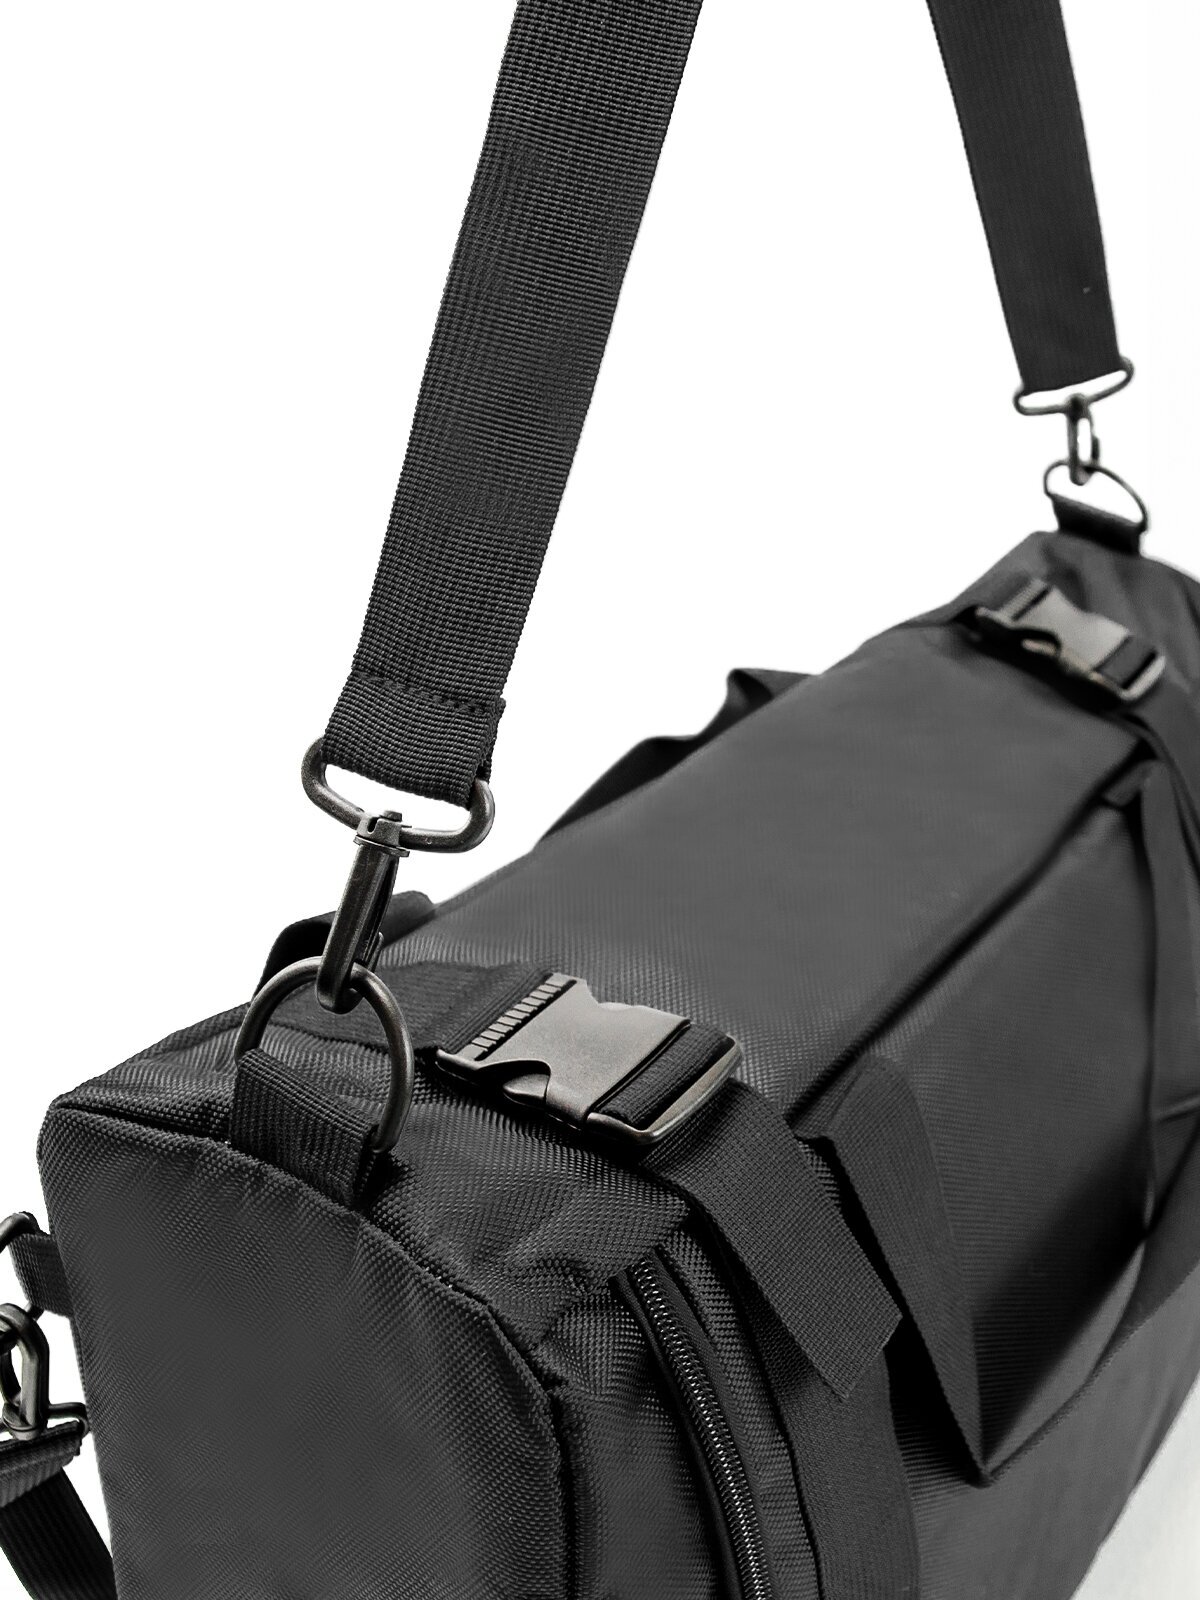 Рюкзак-спортивная сумка (22,5 л, черная) UrbanStorm трансформер большой размер для фитнеса, отдыха \ школьный для мальчиков, девочек - фотография № 11